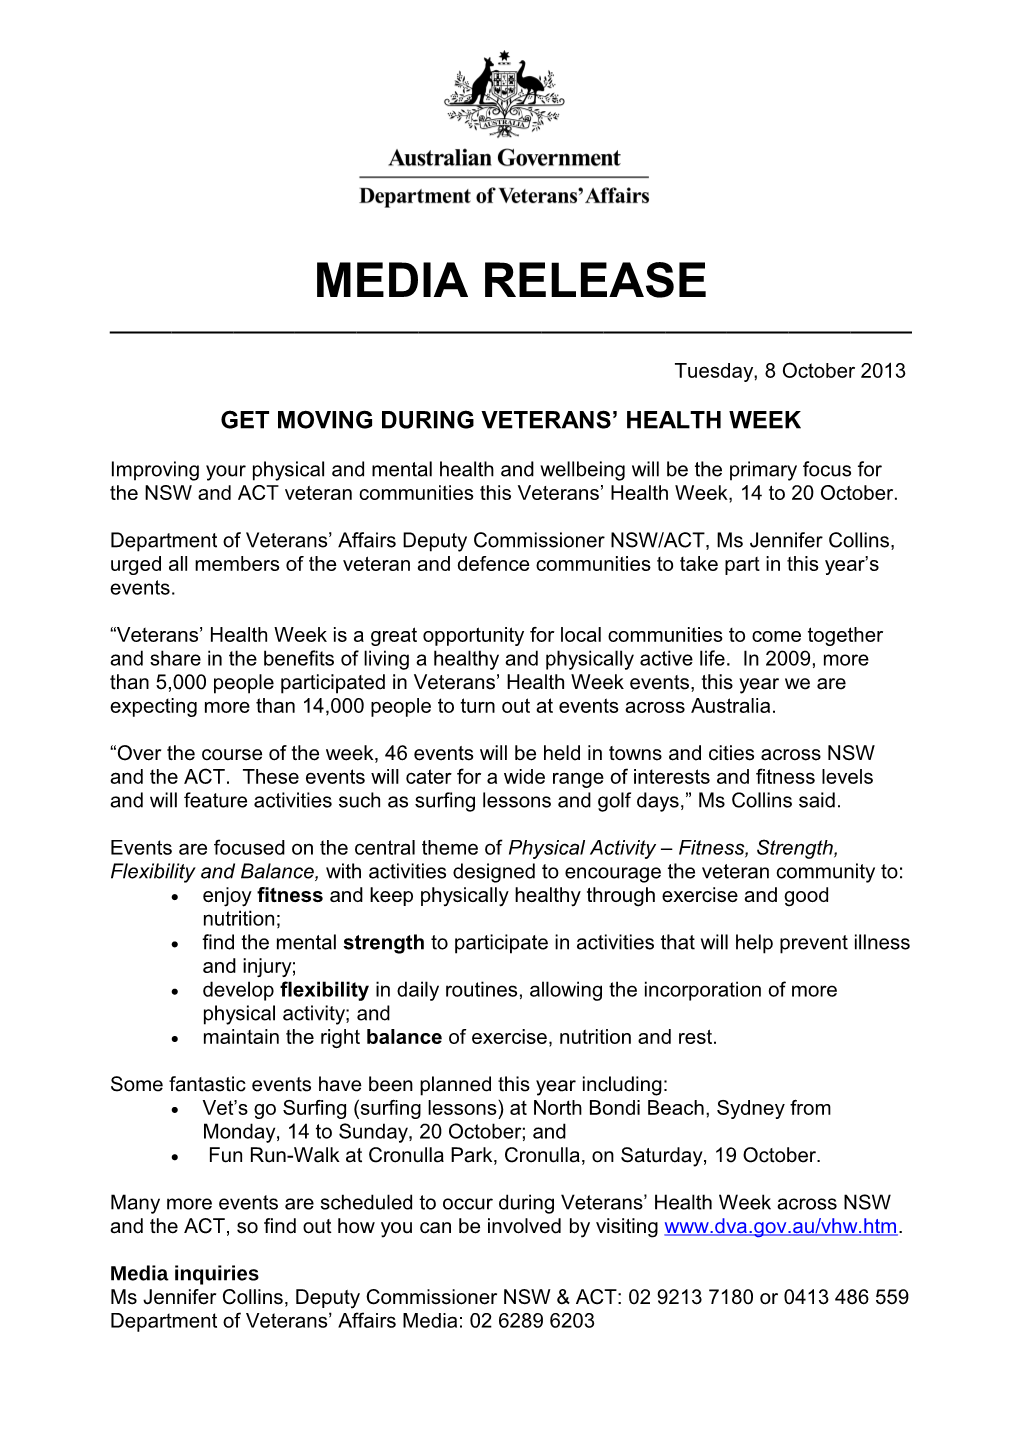 Get Moving During Veterans Health Week